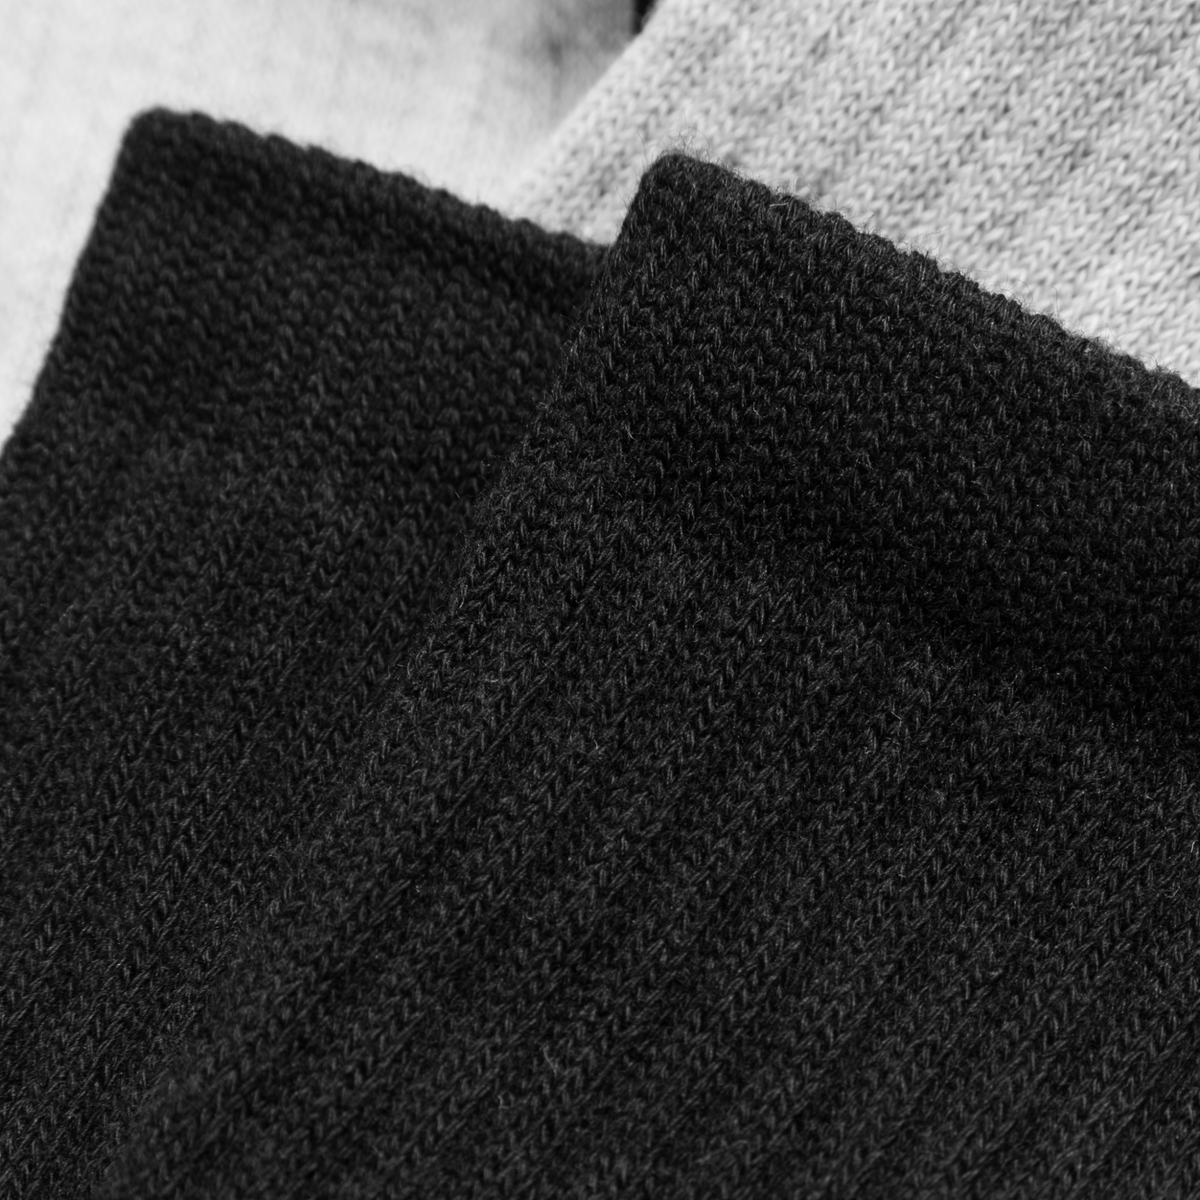 Sport Socks - Black/Grey